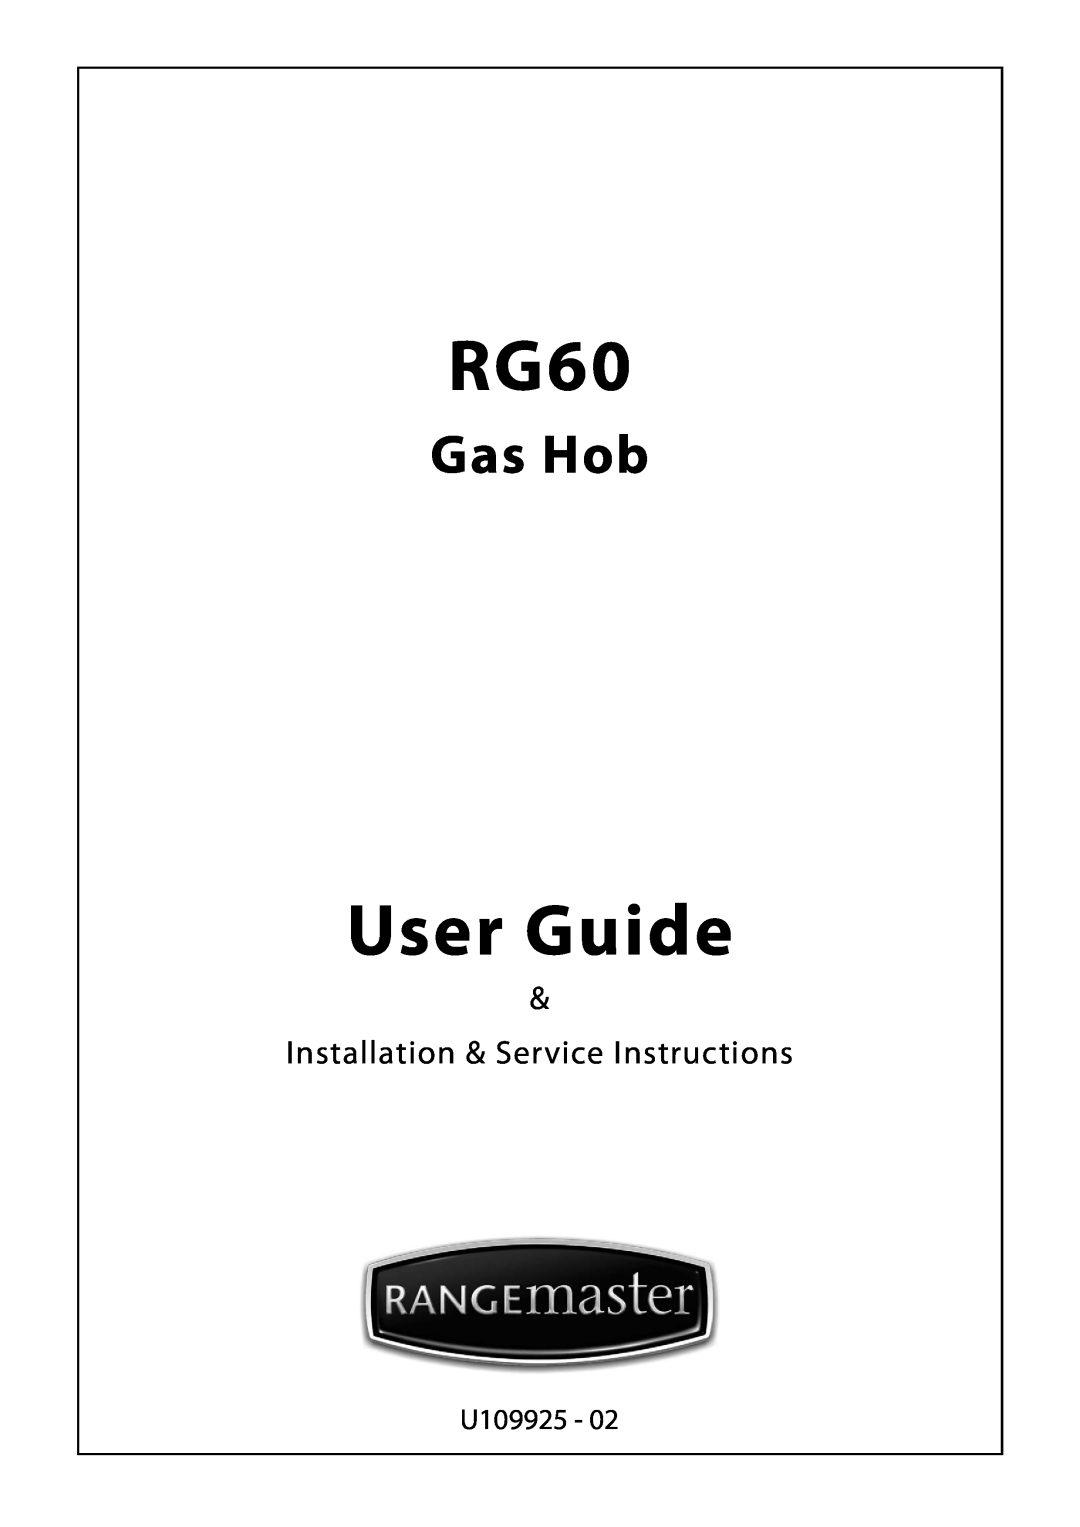 Rangemaster RG60 manual User Guide, Gas Hob, Installation & Service Instructions, U109925 